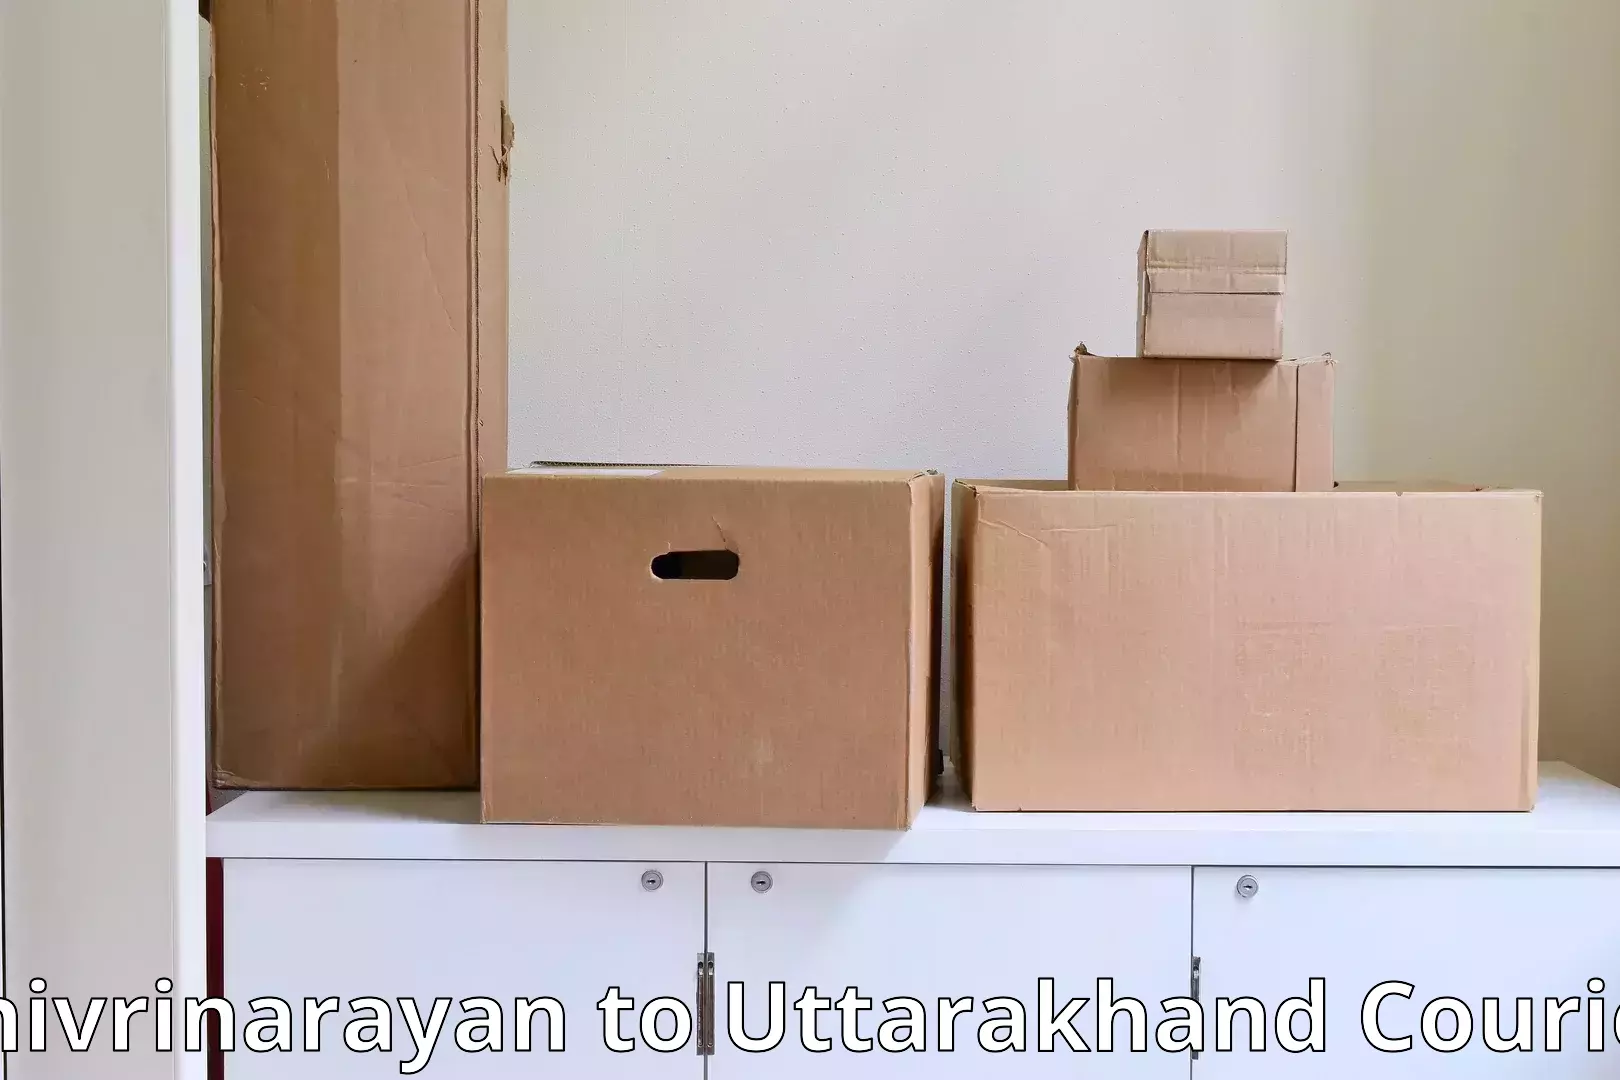 Professional moving company Shivrinarayan to Tanakpur